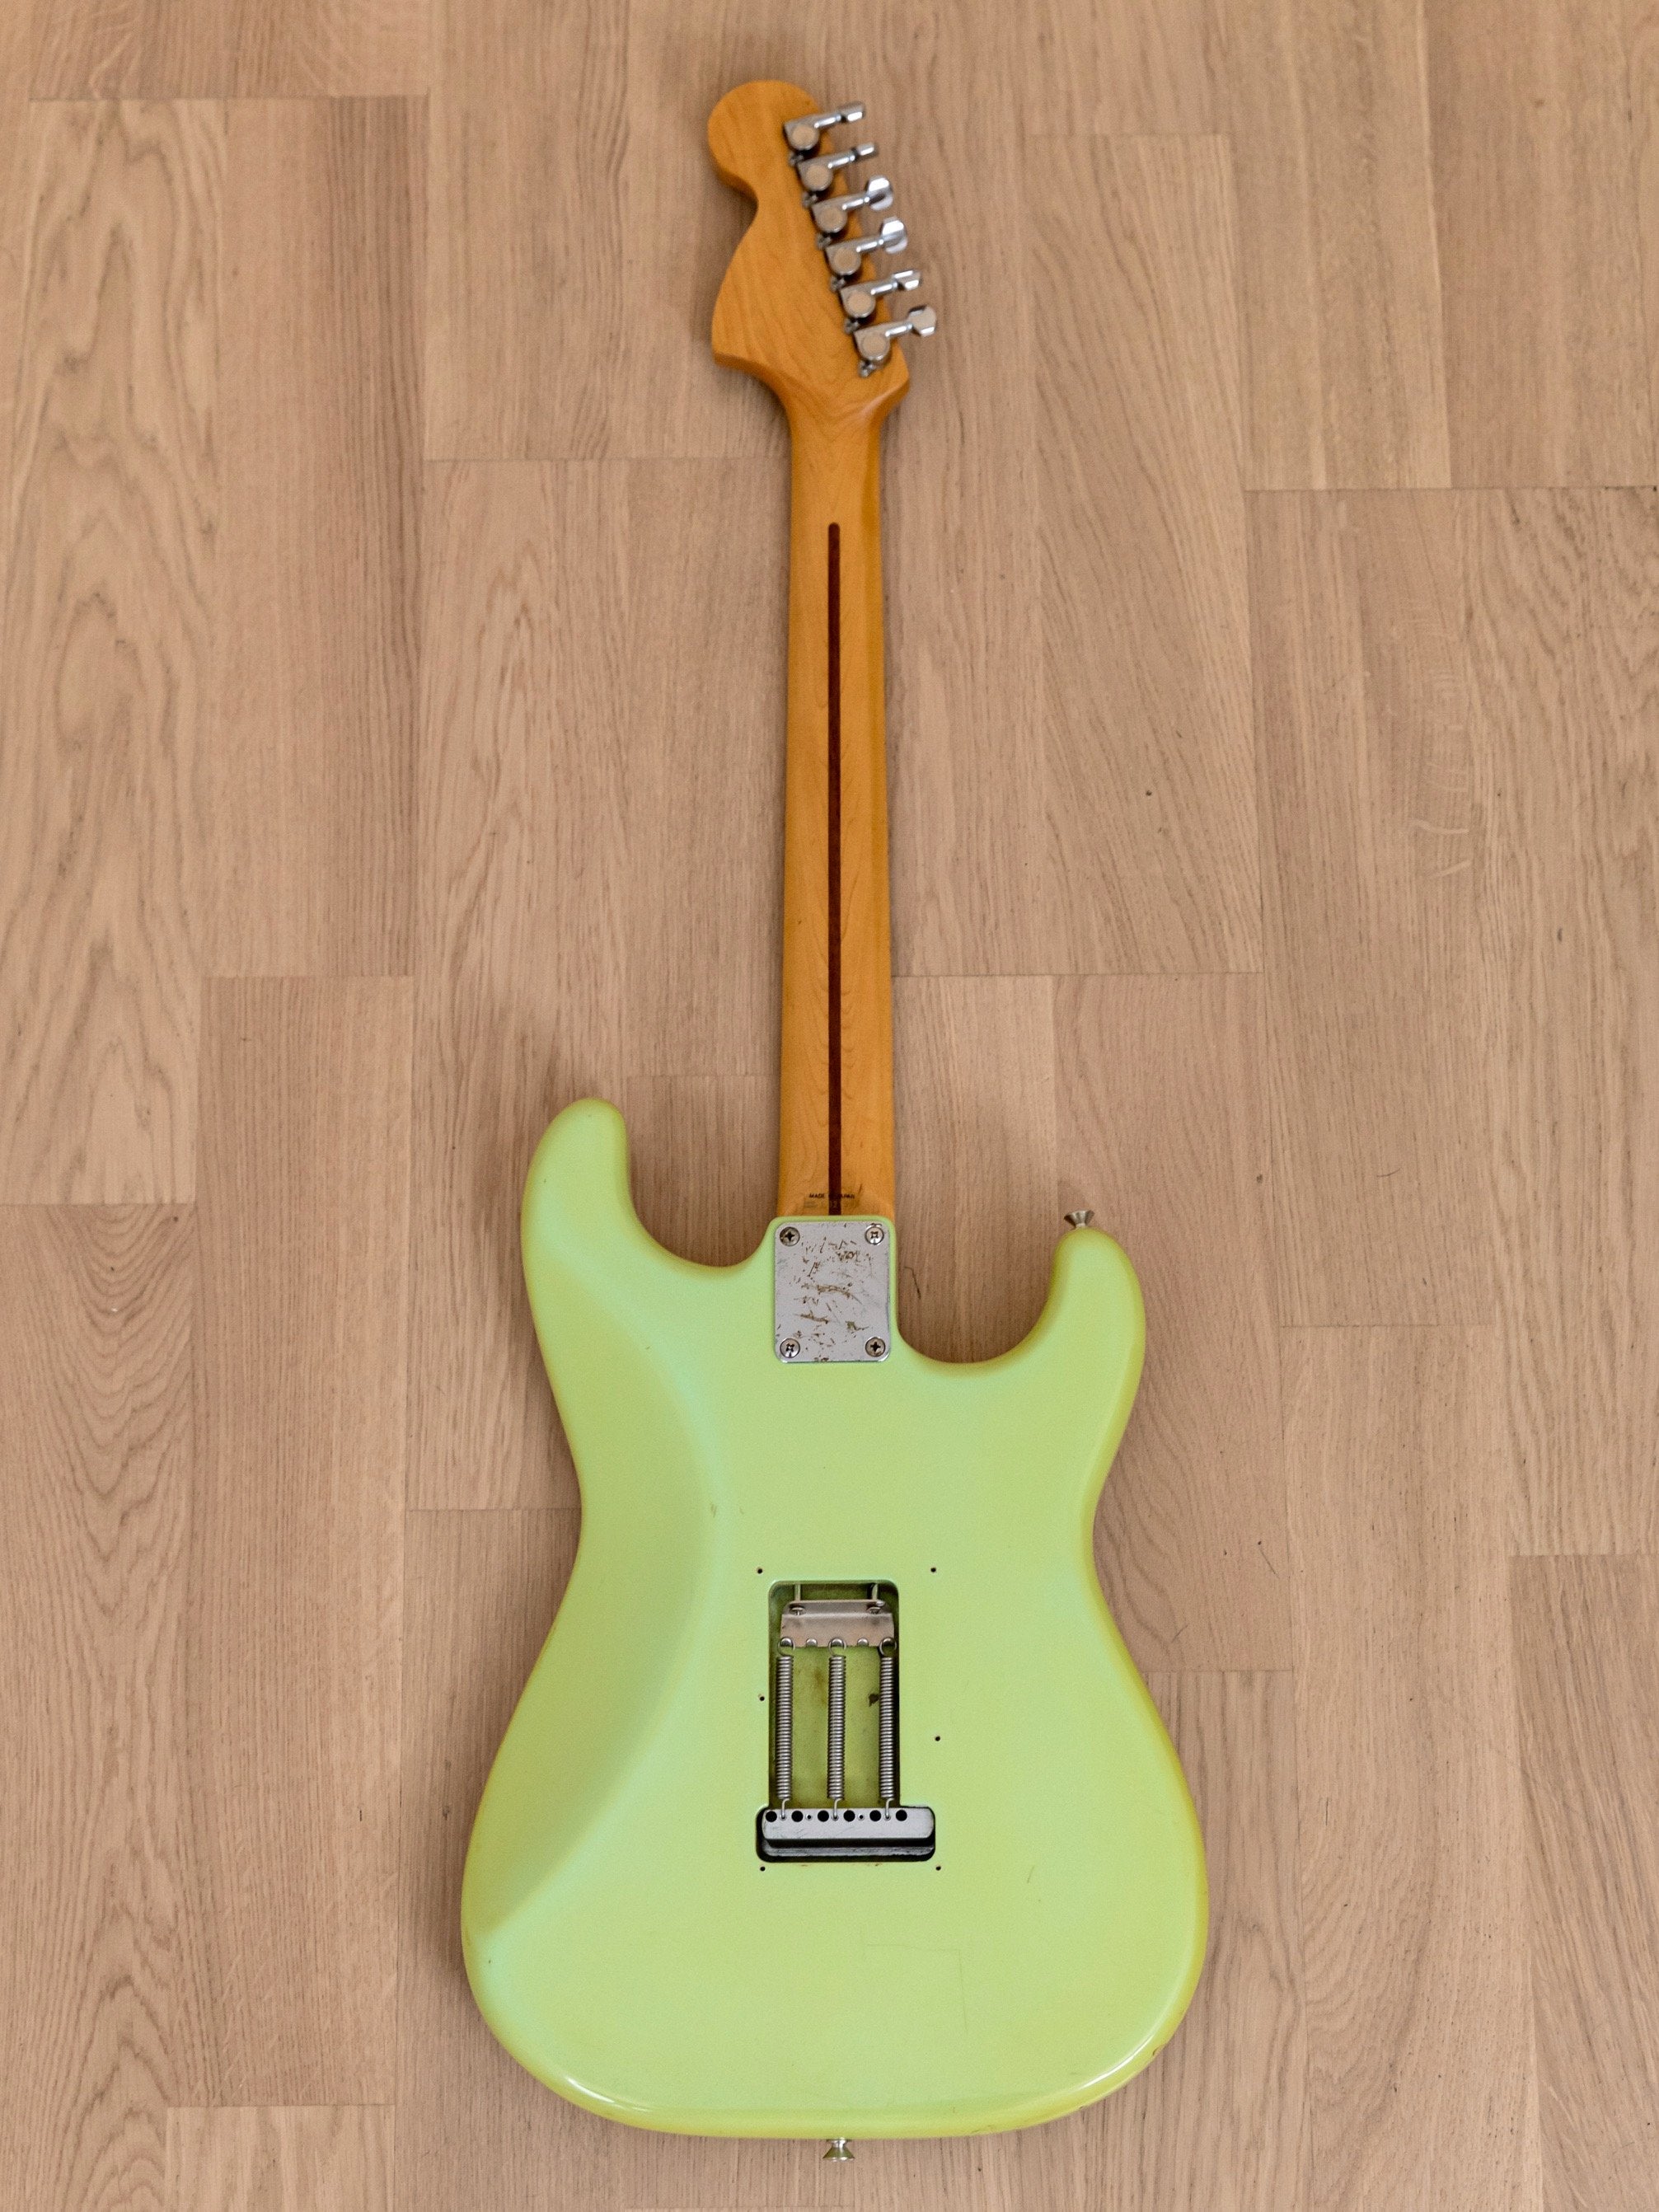 1987 Fender Yngwie Malmsteen Stratocaster ST72-86DSC Reverse Body Sonic Blue, Order Made & Yngwie-Signed, Japan MIJ